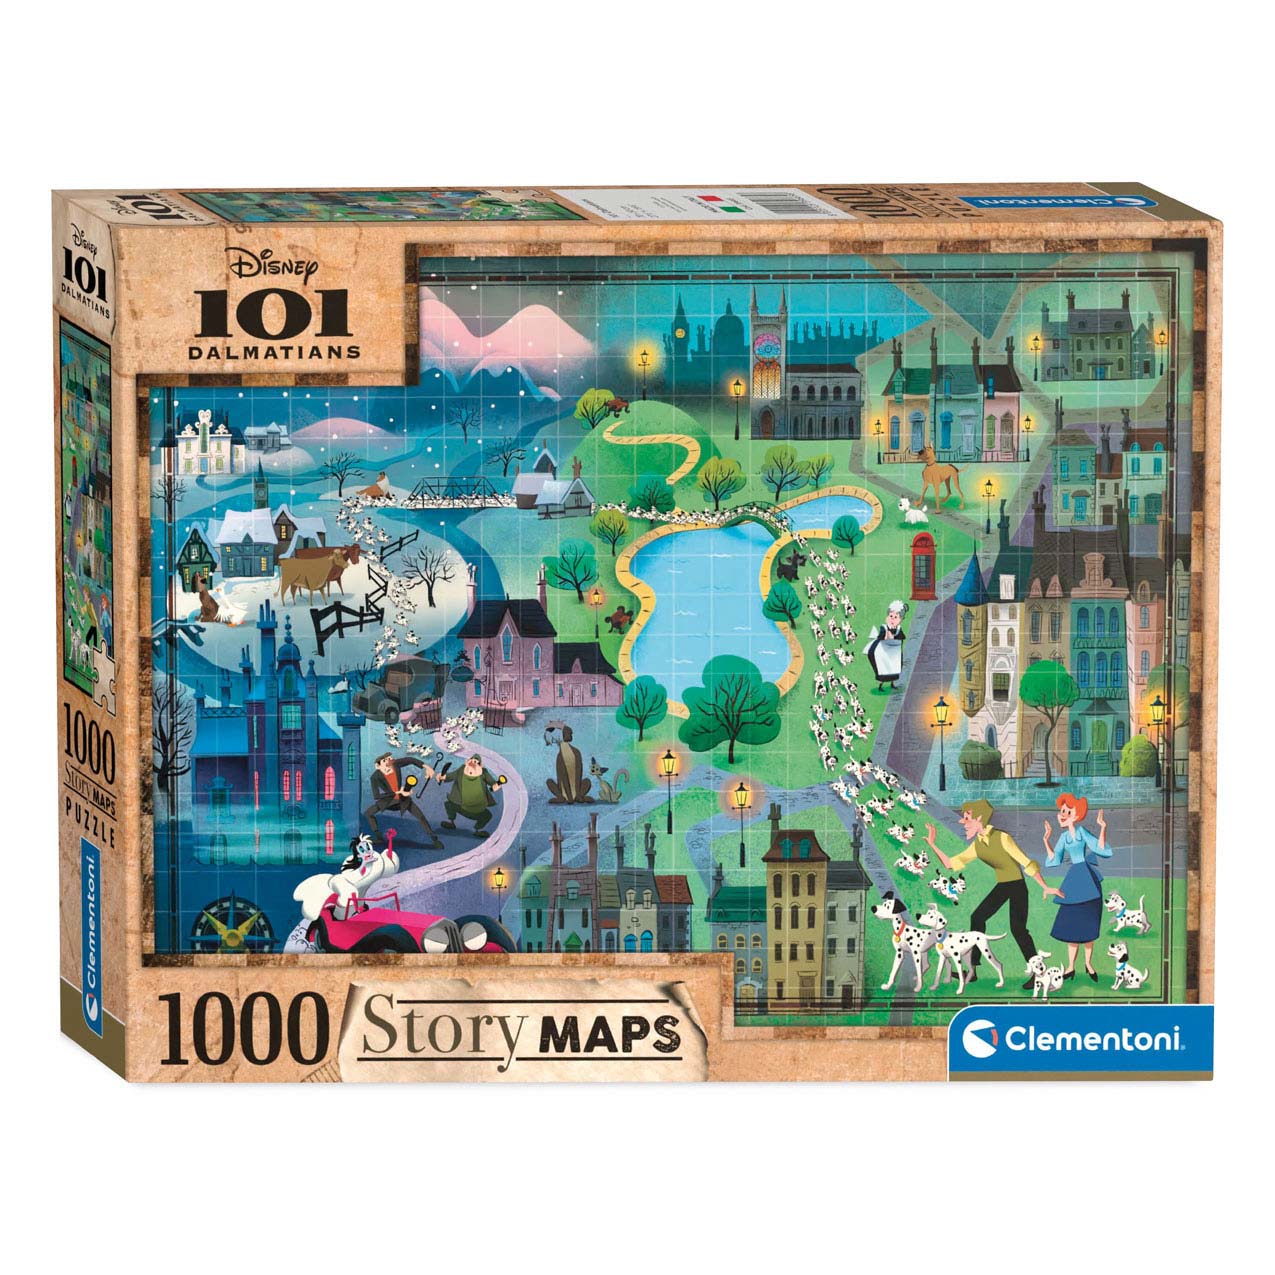 Clementoni Puzzle Carte du monde 101 Dalmatiens, 1000 pièces.